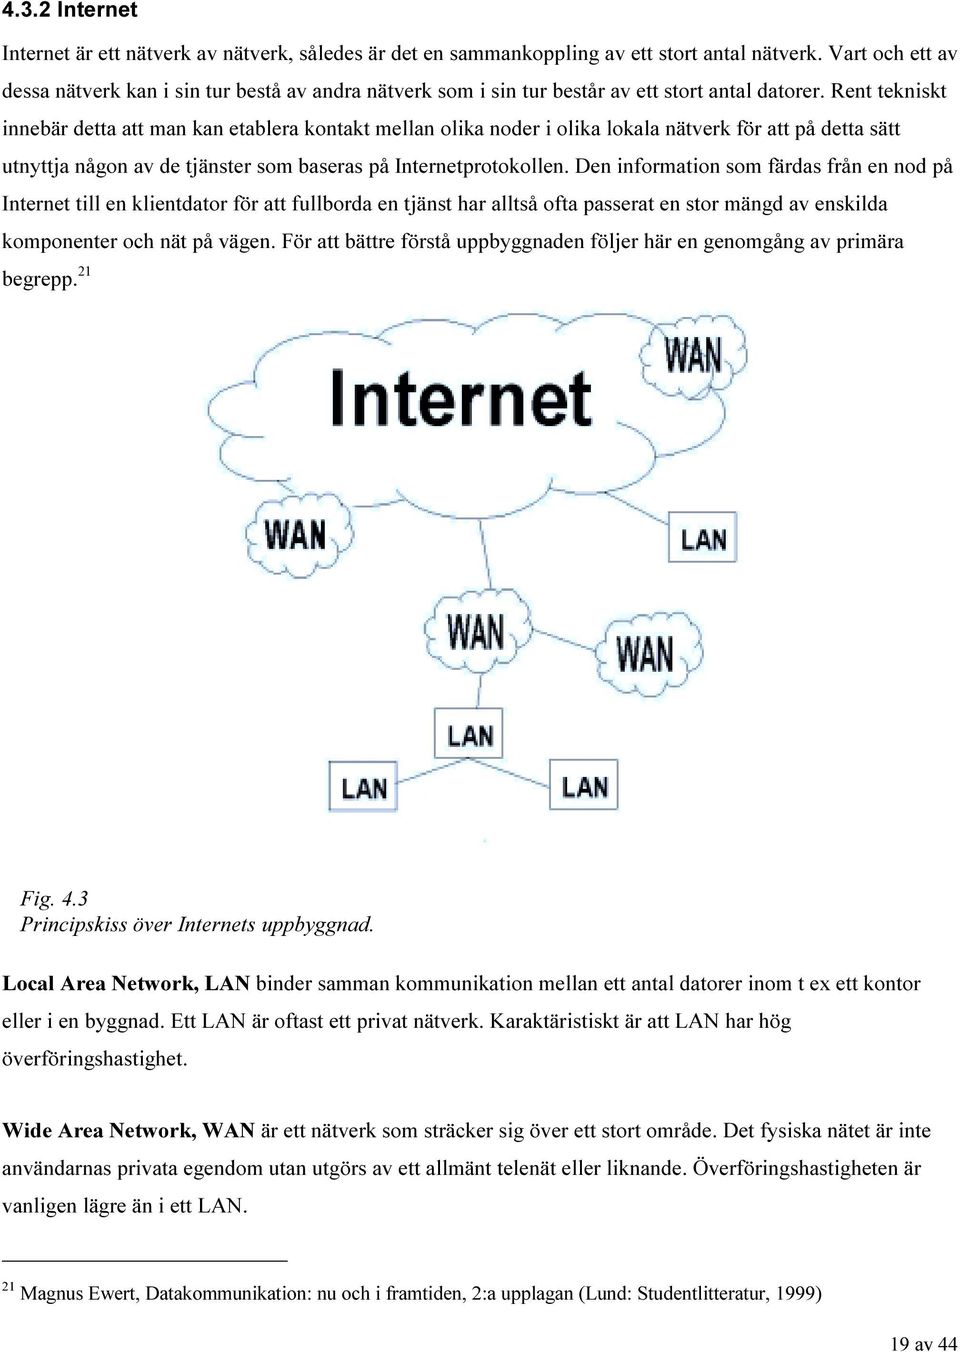 Rent tekniskt innebär detta att man kan etablera kontakt mellan olika noder i olika lokala nätverk för att på detta sätt utnyttja någon av de tjänster som baseras på Internetprotokollen.